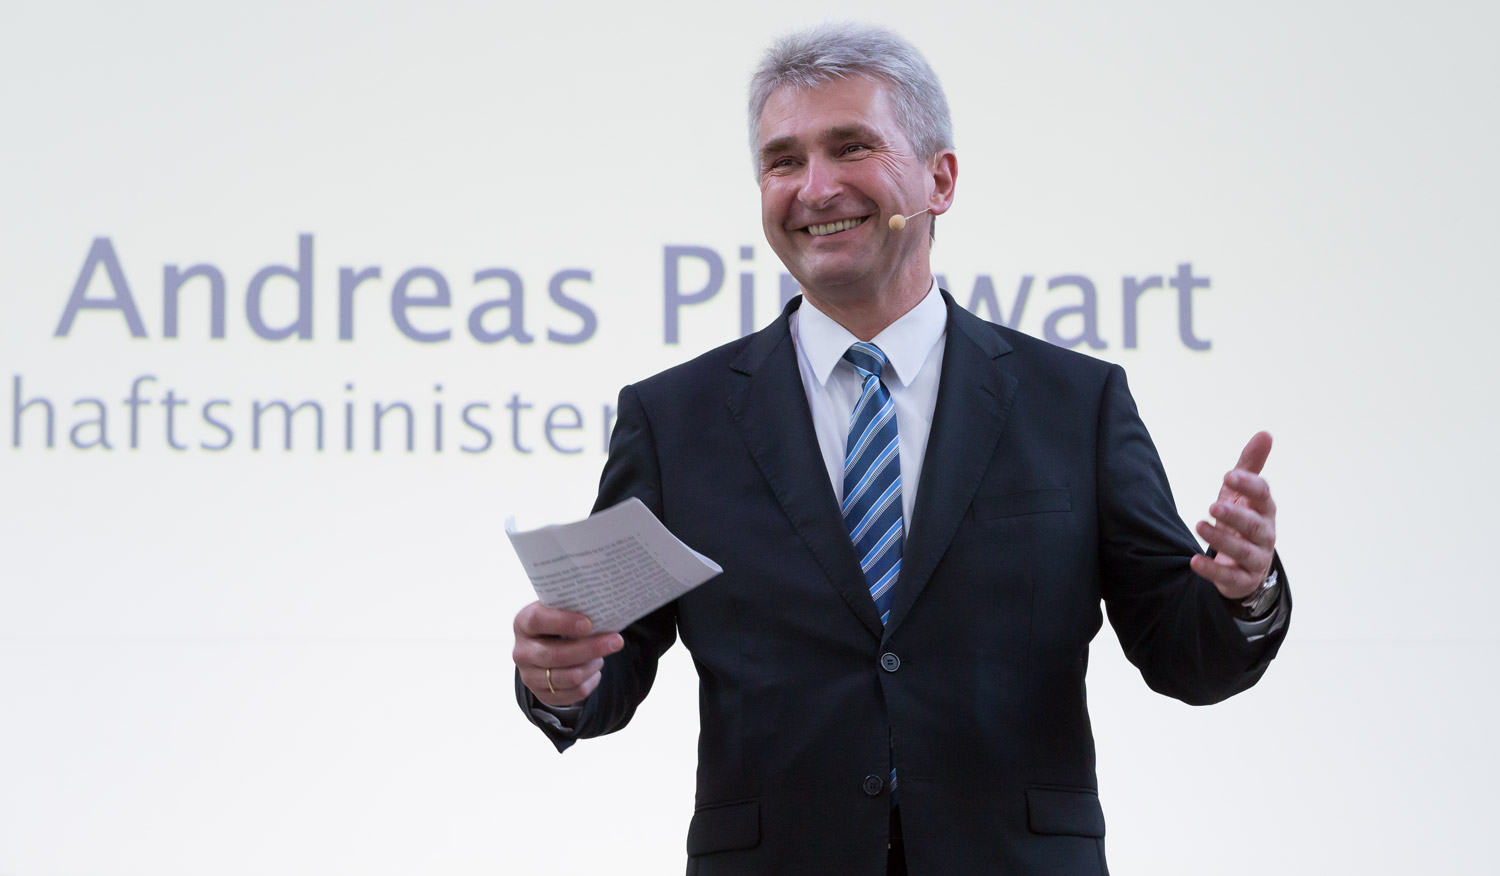 Andreas Pinkwart, Minister für Wirtschaft, Innovation, Digitalisierung und Energie des Landes Nordrhein-Westfalen